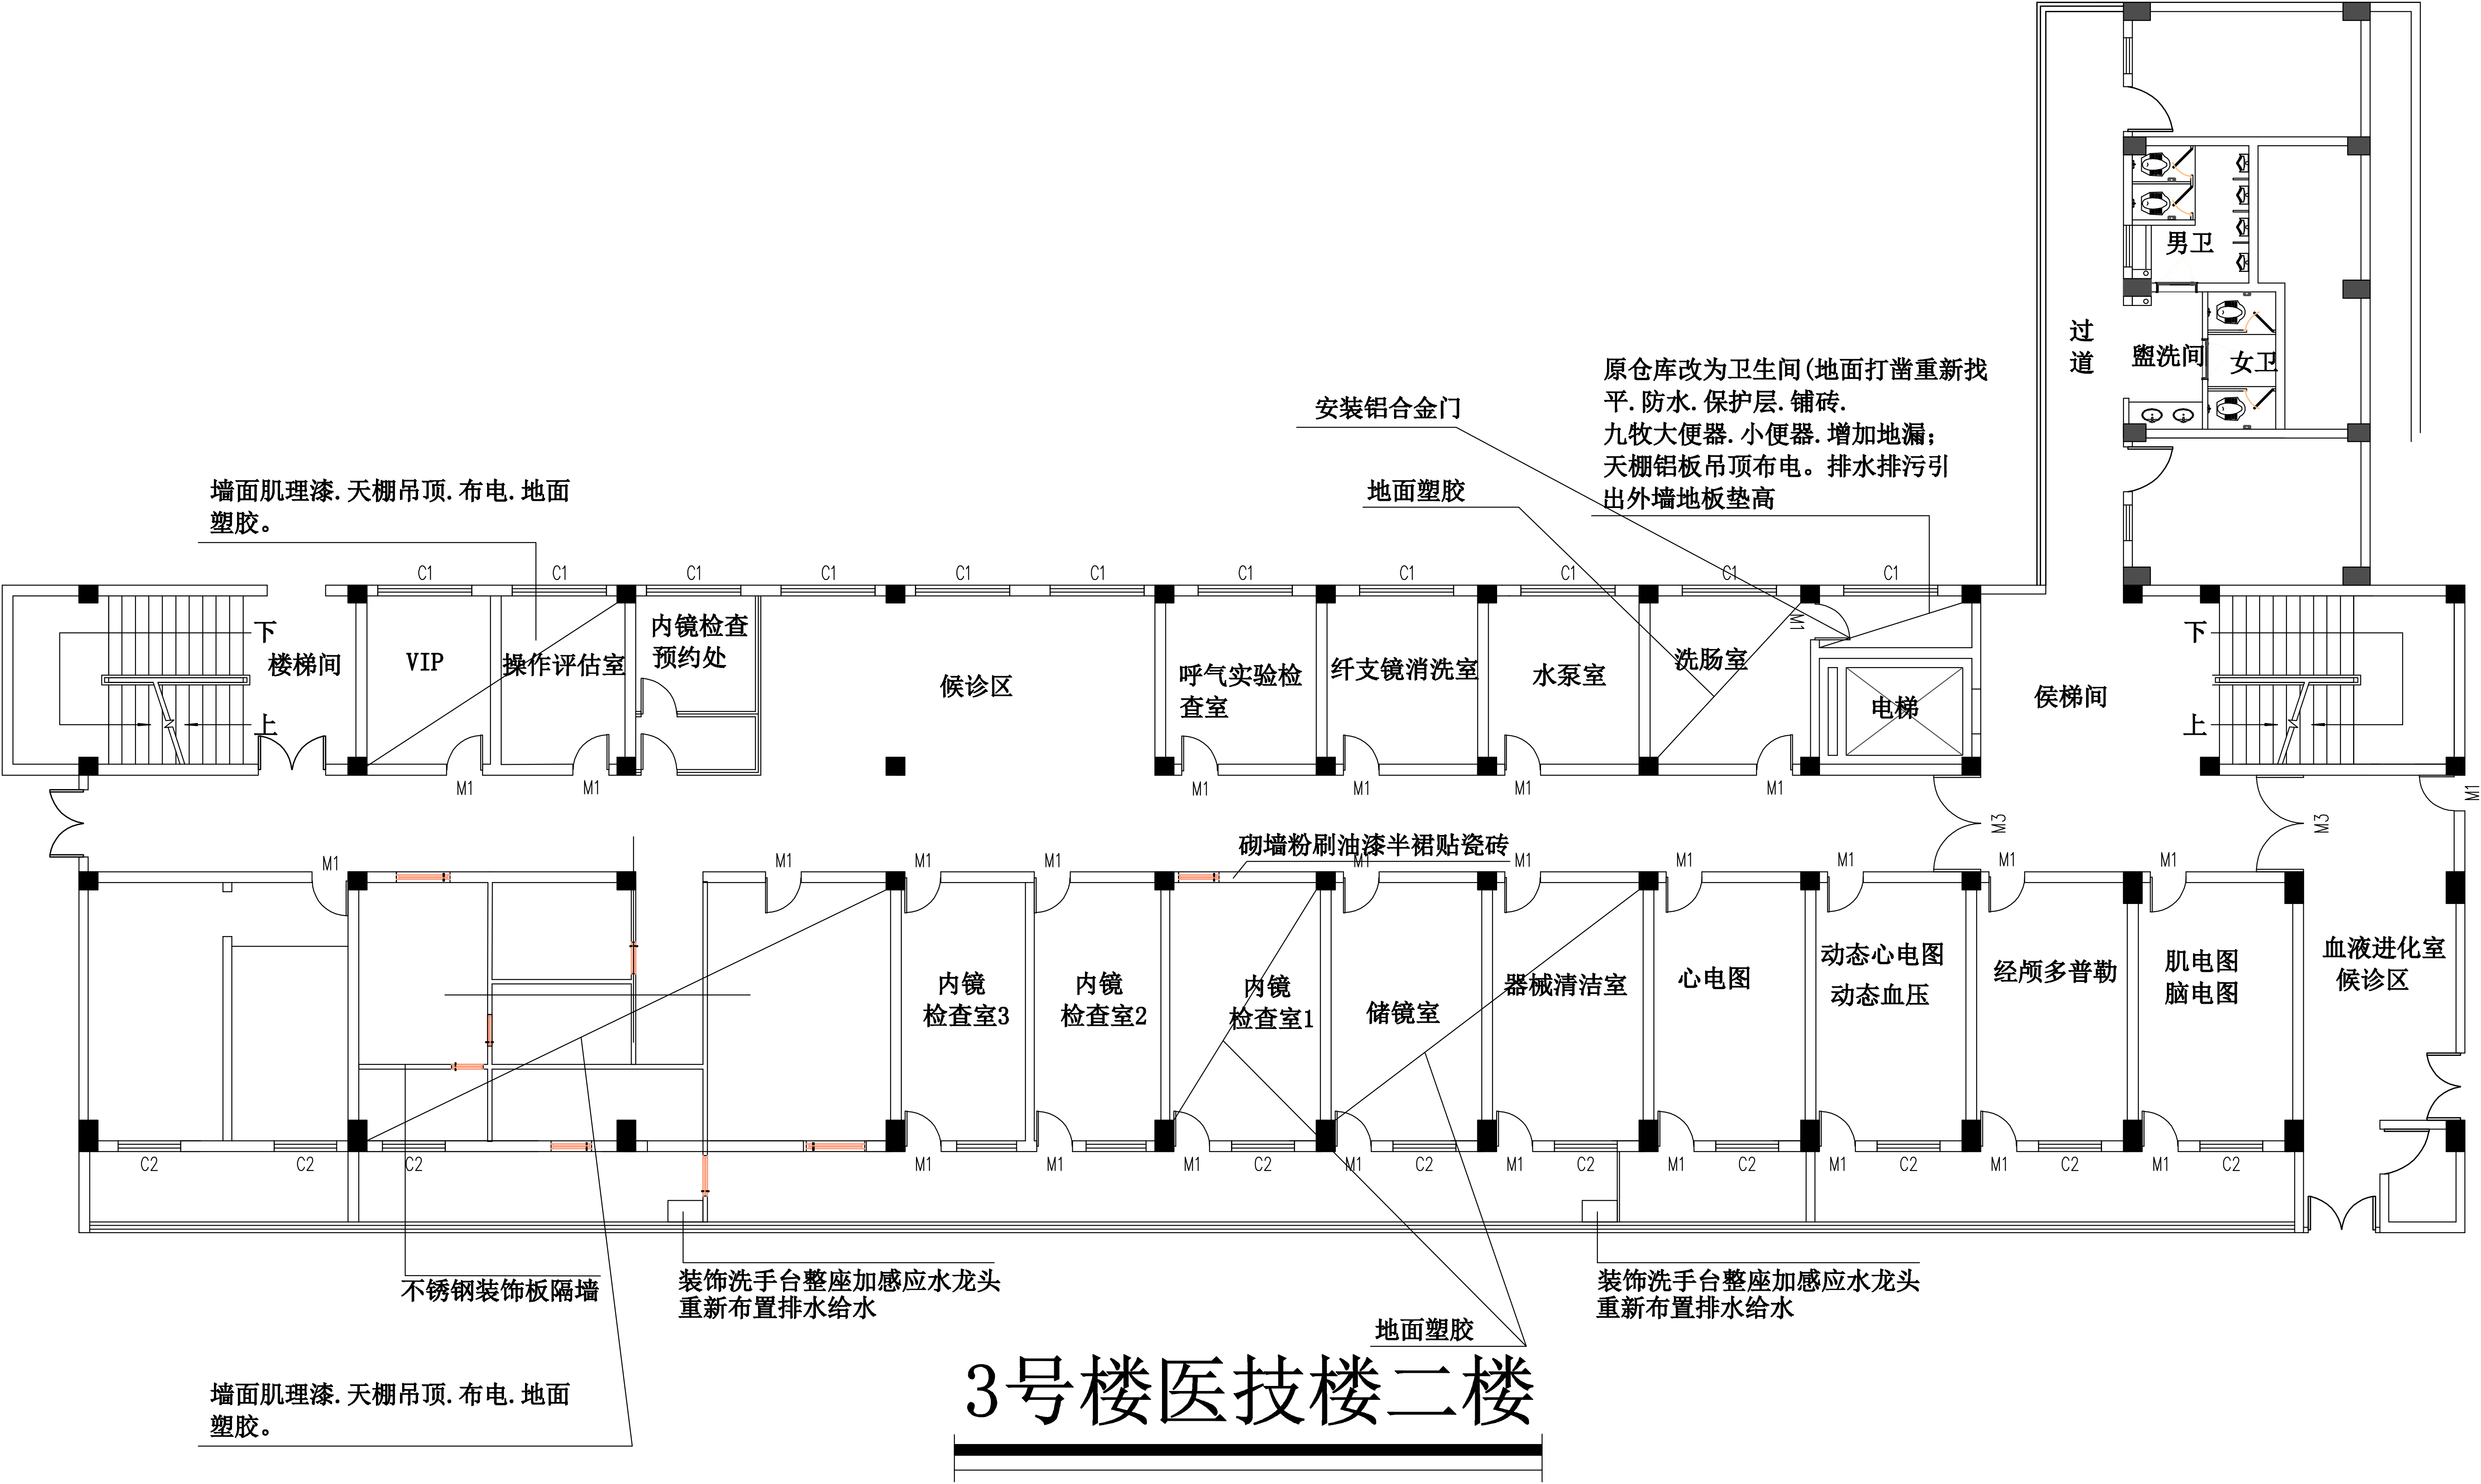 晋江市医院内窥镜室装修工程邀标意向公示